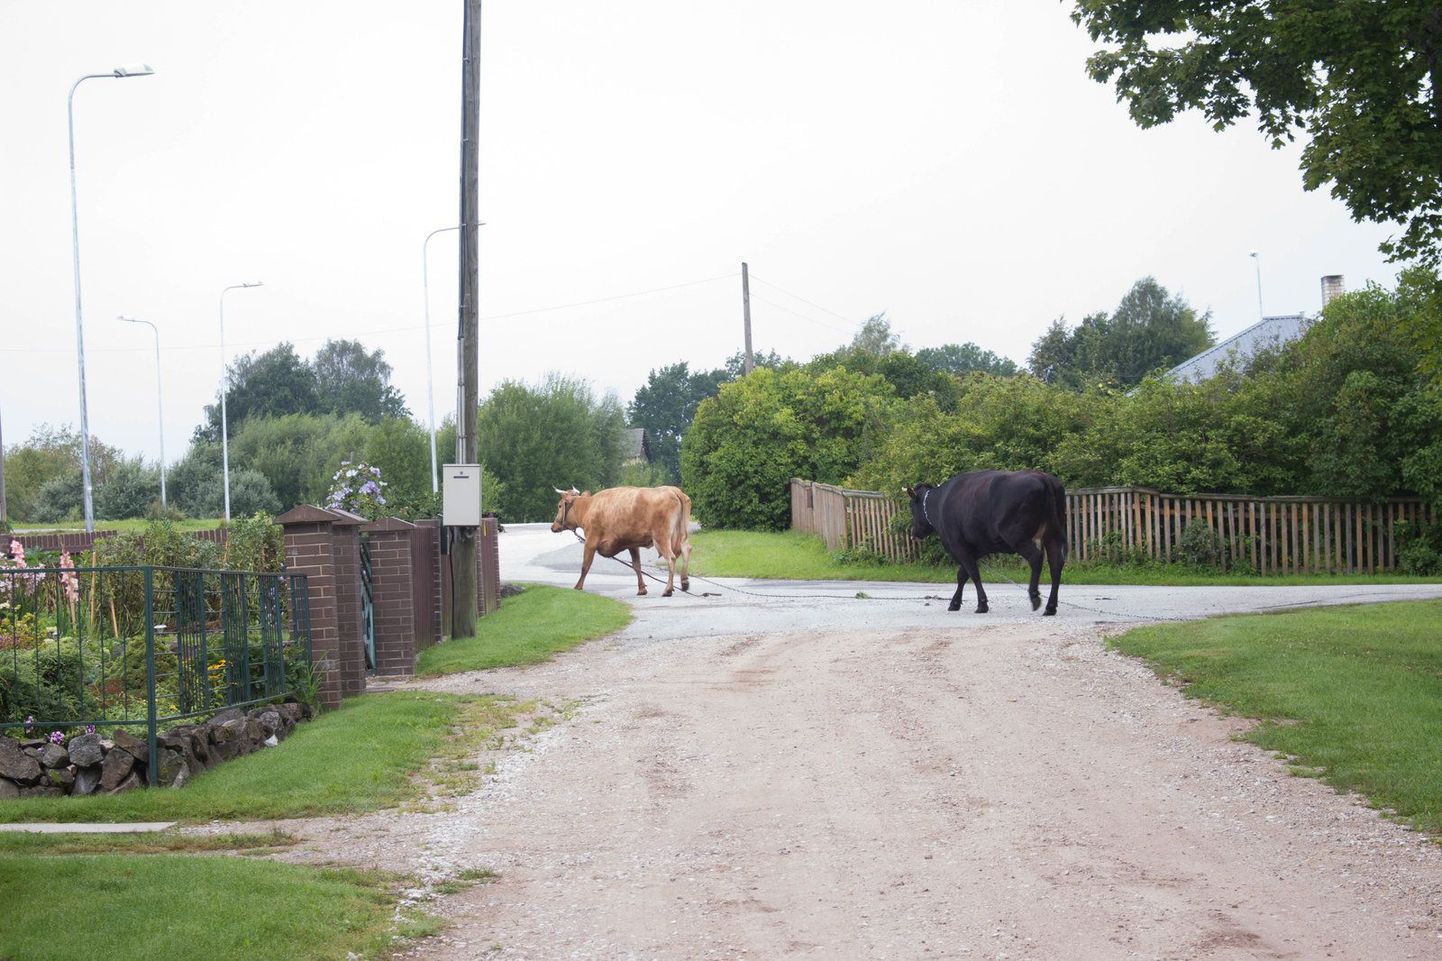 Kaks jooksikut võtsid Räni pargist suuna otse Valgamaa kutseõppekeskuse poole, kus tagaajamine alles alguse sai. Lehmad ees ning politsei ja päästeamet järel, lõpuks sai kahest lehmast jagu kohalik mees, kes kinnitas järel lohisenud ketid maasse.